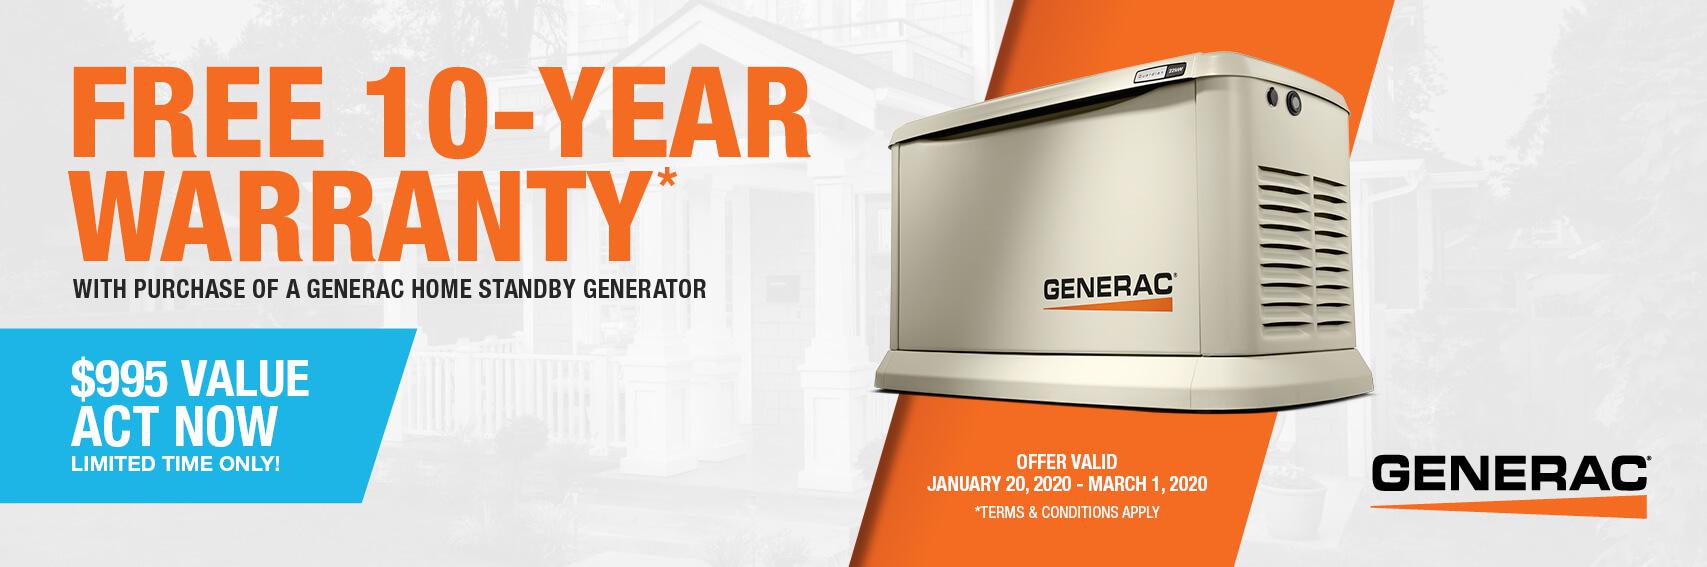 Homestandby Generator Deal | Warranty Offer | Generac Dealer | Celebration, FL